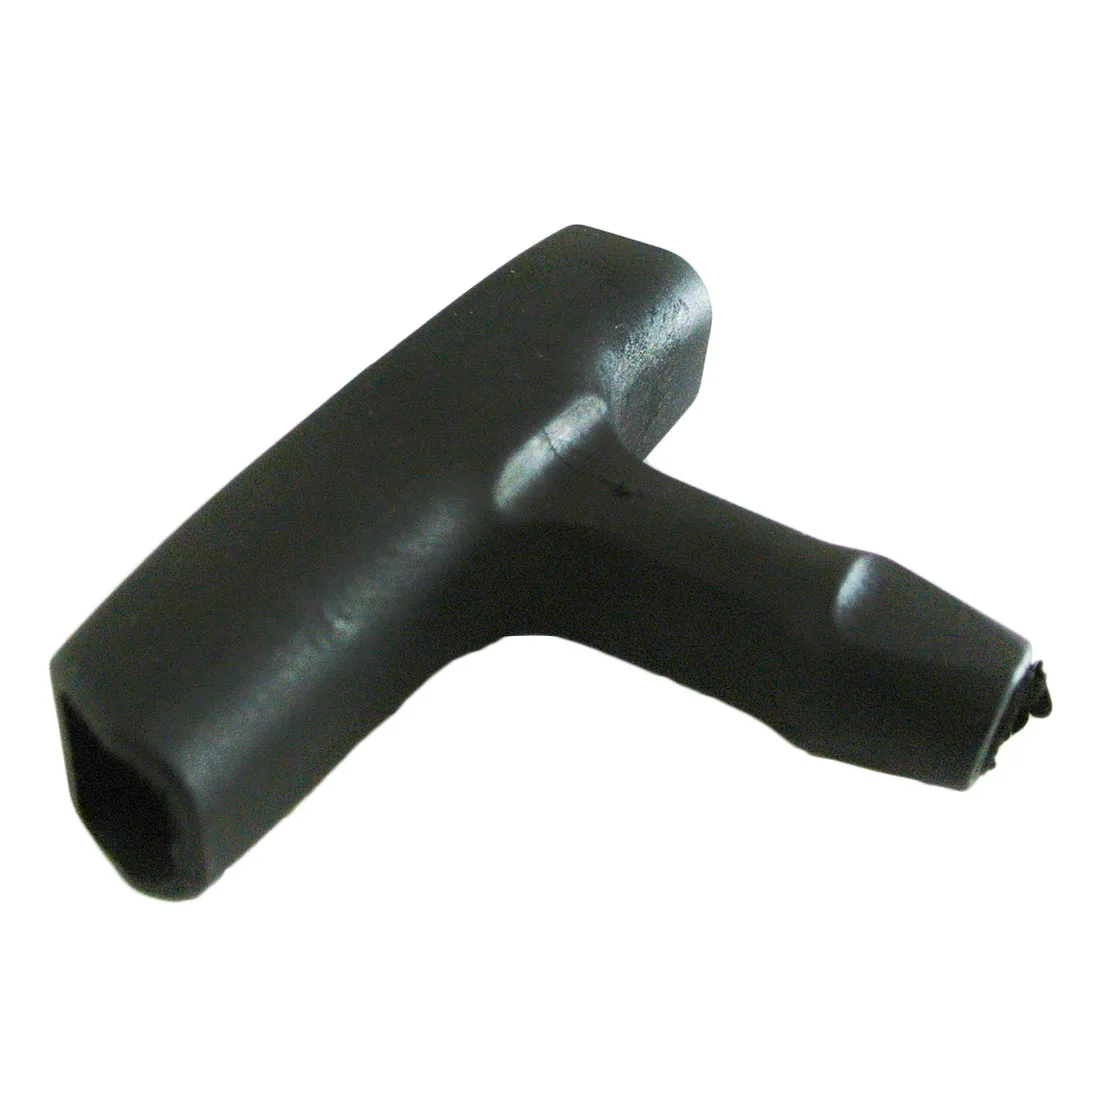 Repeteerstarter Touw Pull Cord + Handvat Grip Kit Voor Stihl 038 MS380 MS381 Start Handvat Pull Grip Touw Koord kit